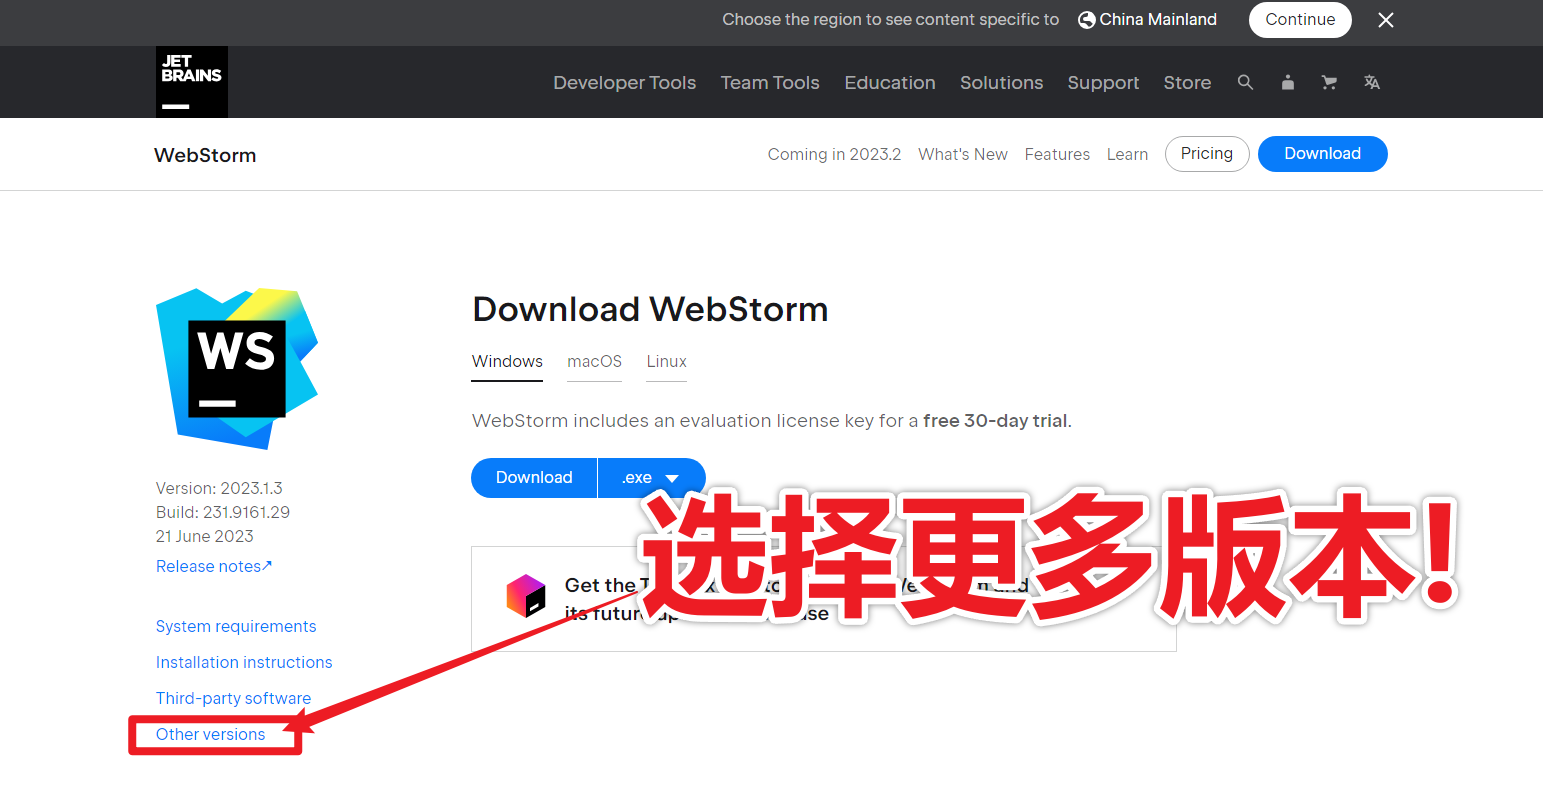 【开发工具】WebStorm 前端开发神器菜鸟必备,全网最稳定靠谱的安装教程 一镜到底、全程图文并茂、通俗易懂!